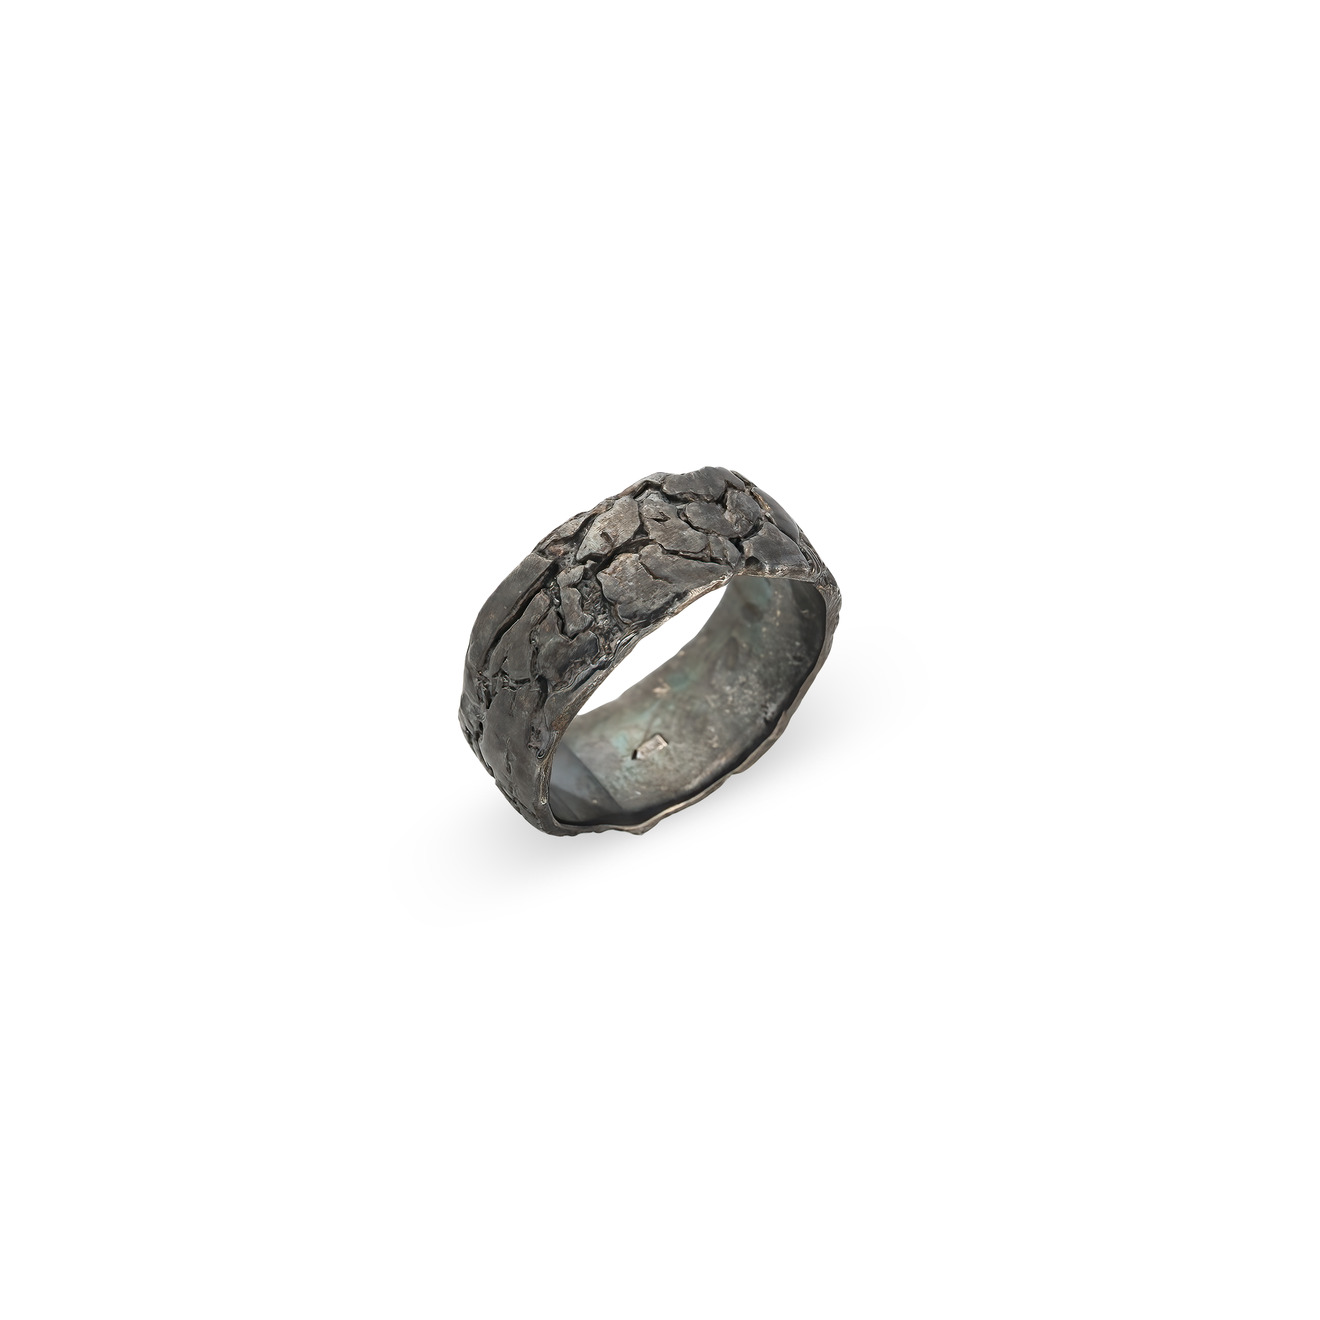 Kintsugi Jewelry Кольцо Milestone из серебра kintsugi jewelry кольцо из серебра со вставкой из шпинели